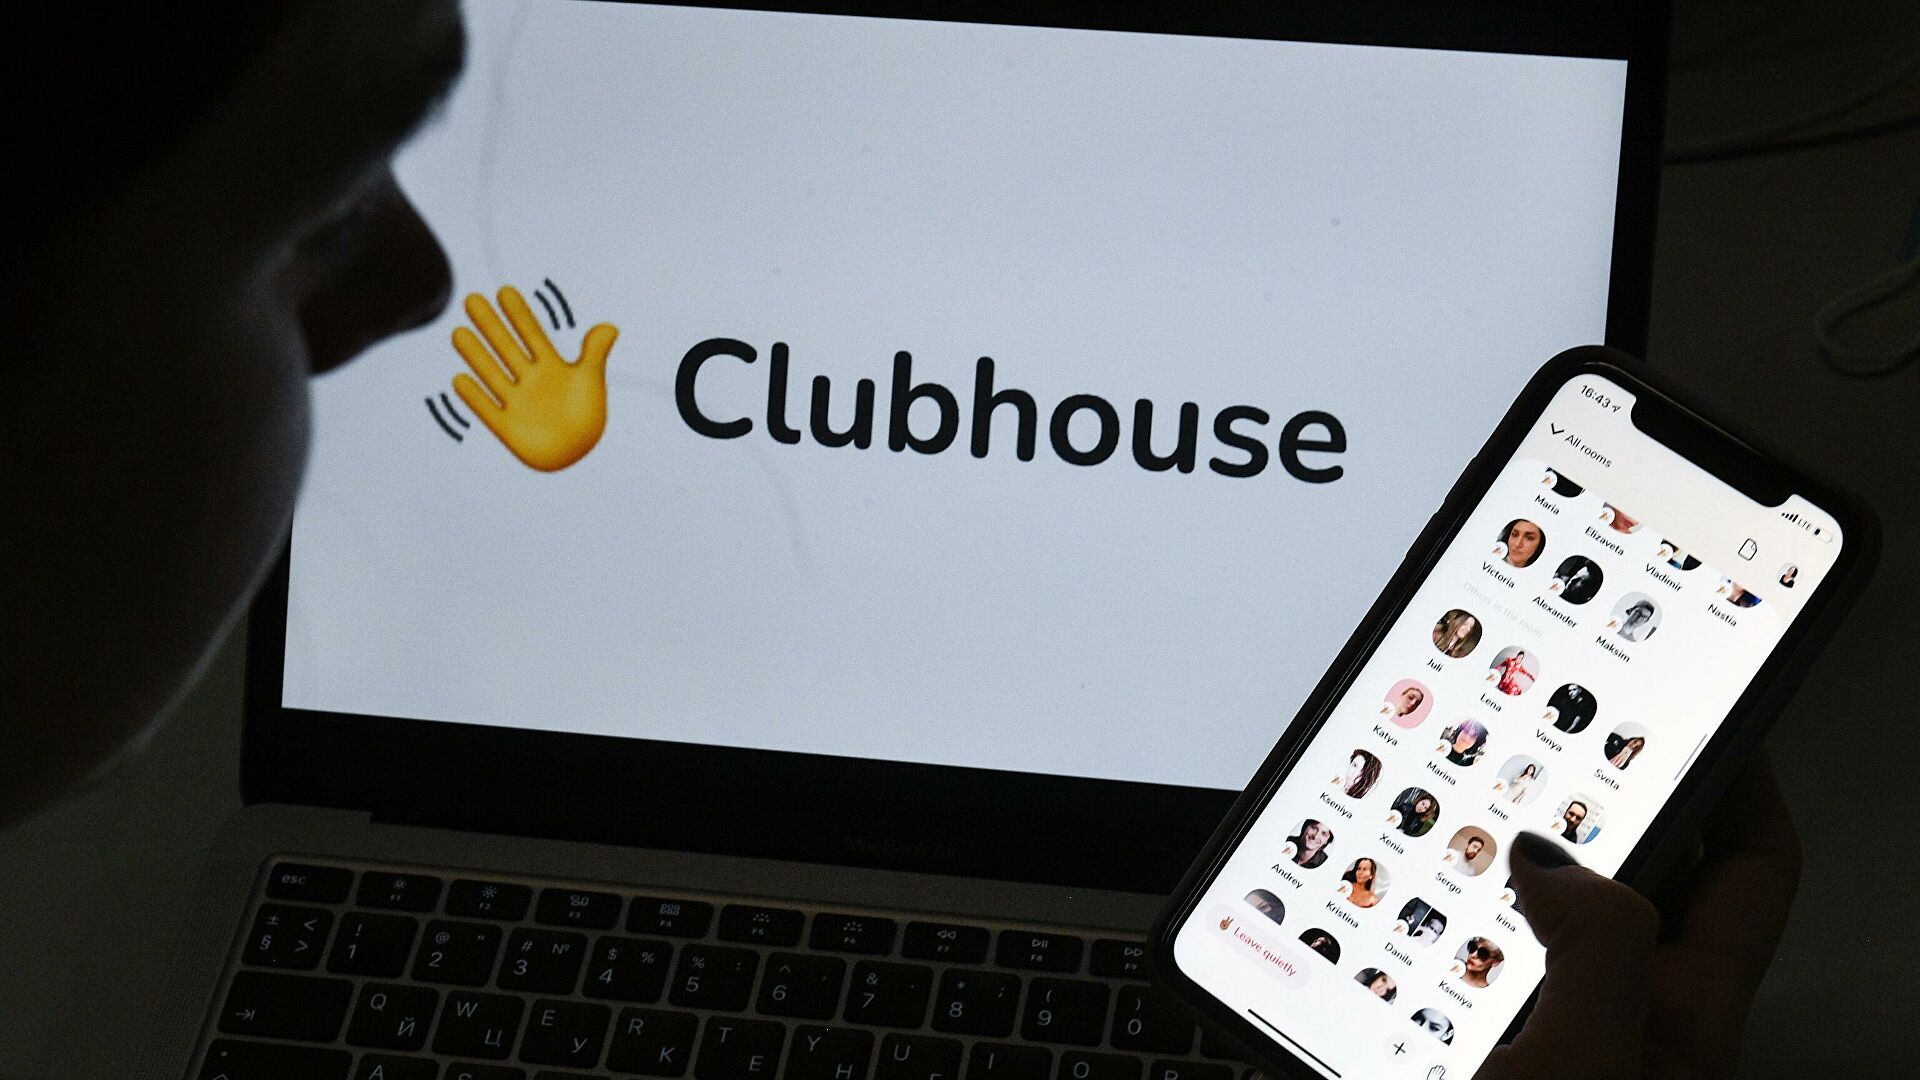 Clubhose’da büyük güvenlik açığı. Kullanıcının verilerini topluyor!